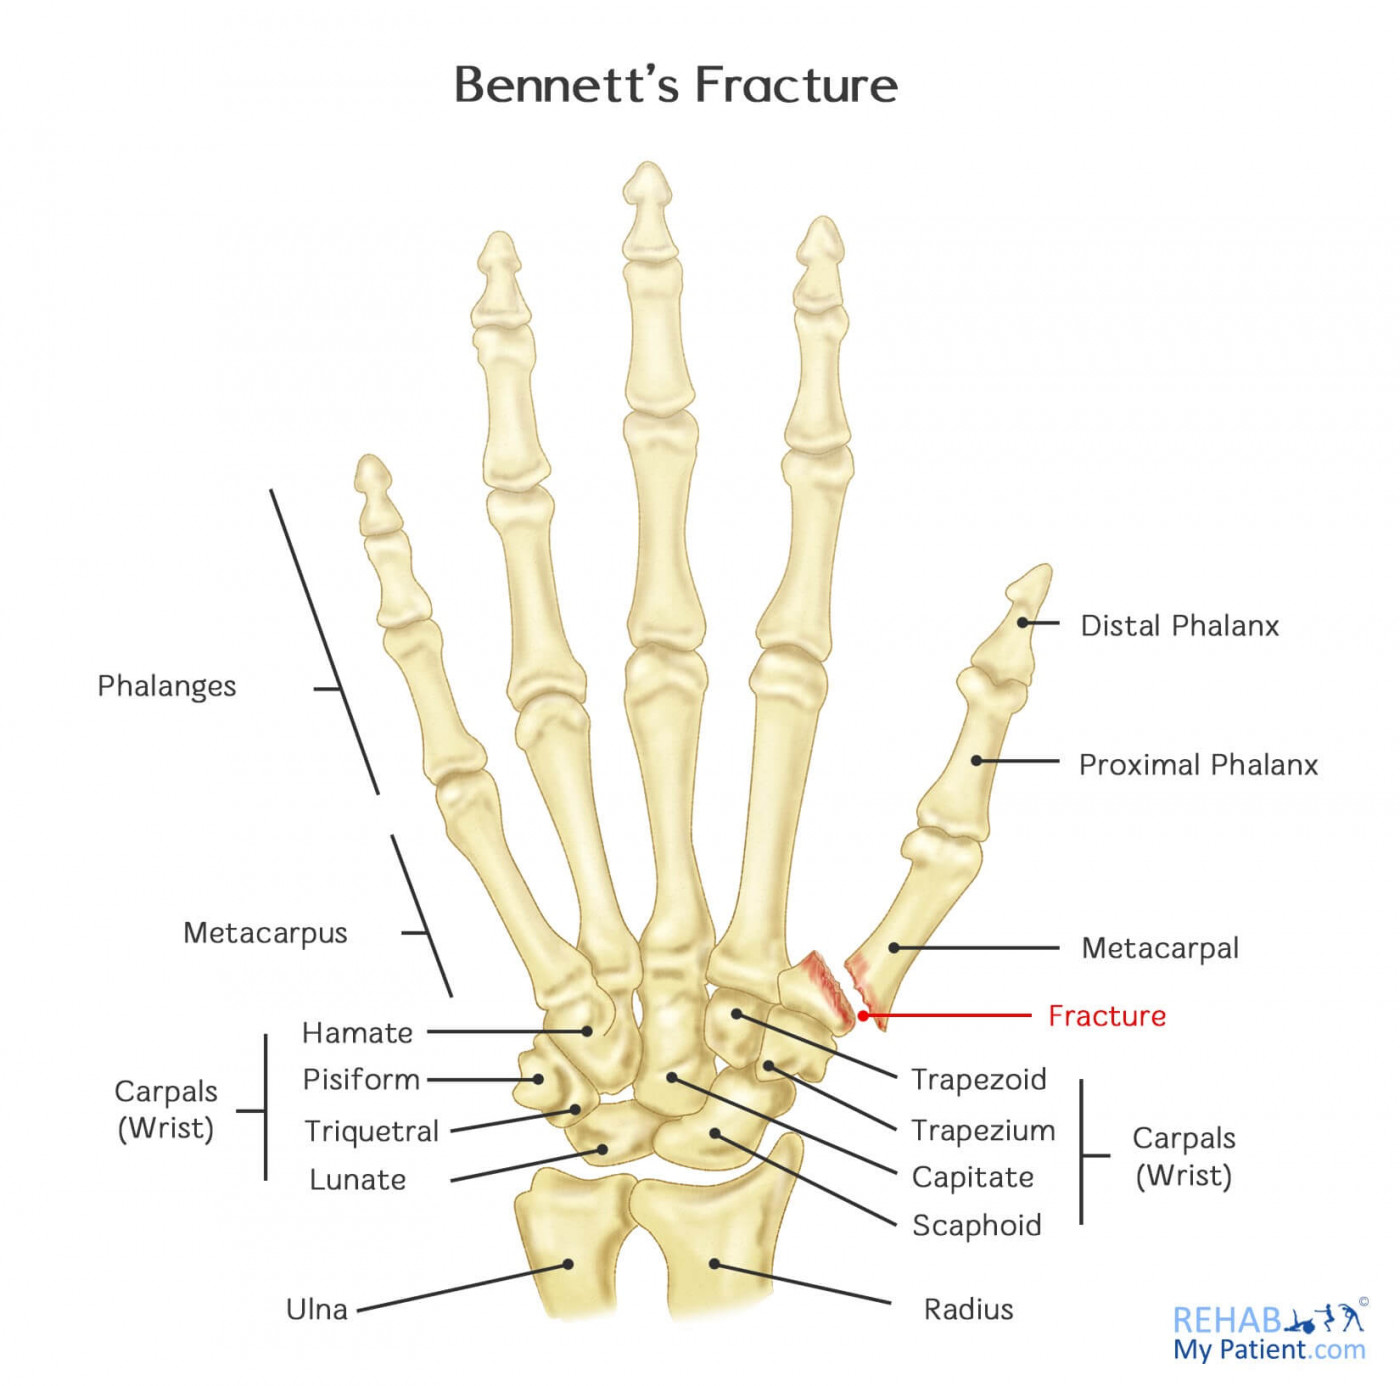 Bennett's Fracture